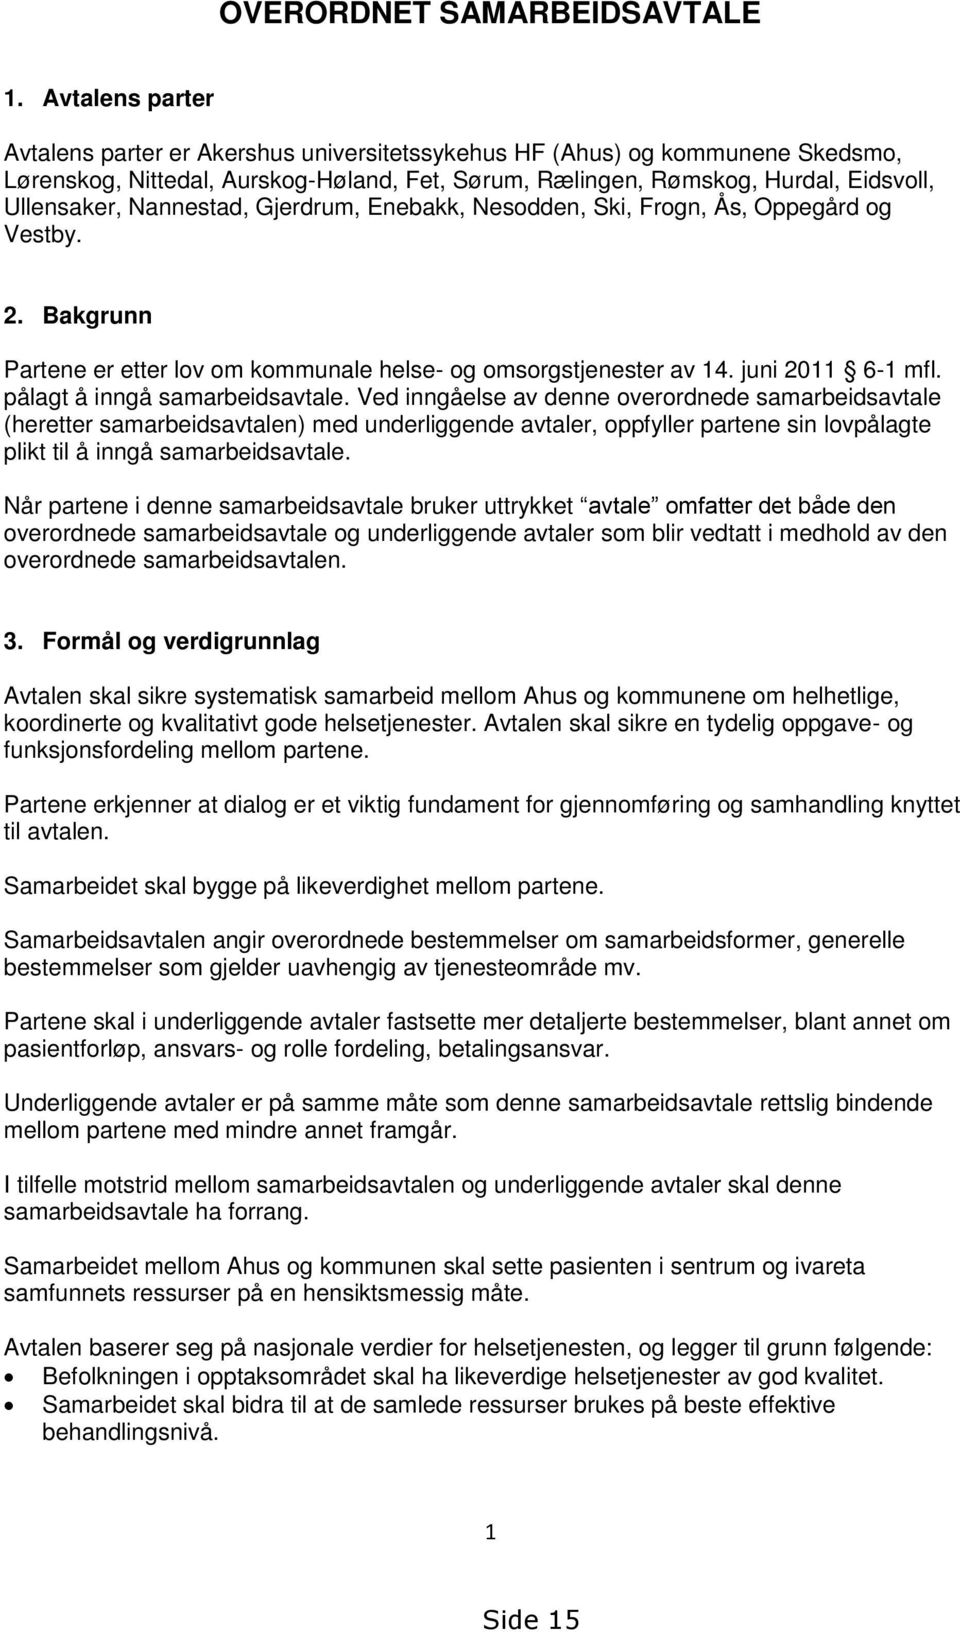 Nannestad, Gjerdrum, Enebakk, Nesodden, Ski, Frogn, Ås, Oppegård og Vestby. 2. Bakgrunn Partene er etter lov om kommunale helse- og omsorgstjenester av 14. juni 2011 6-1 mfl.